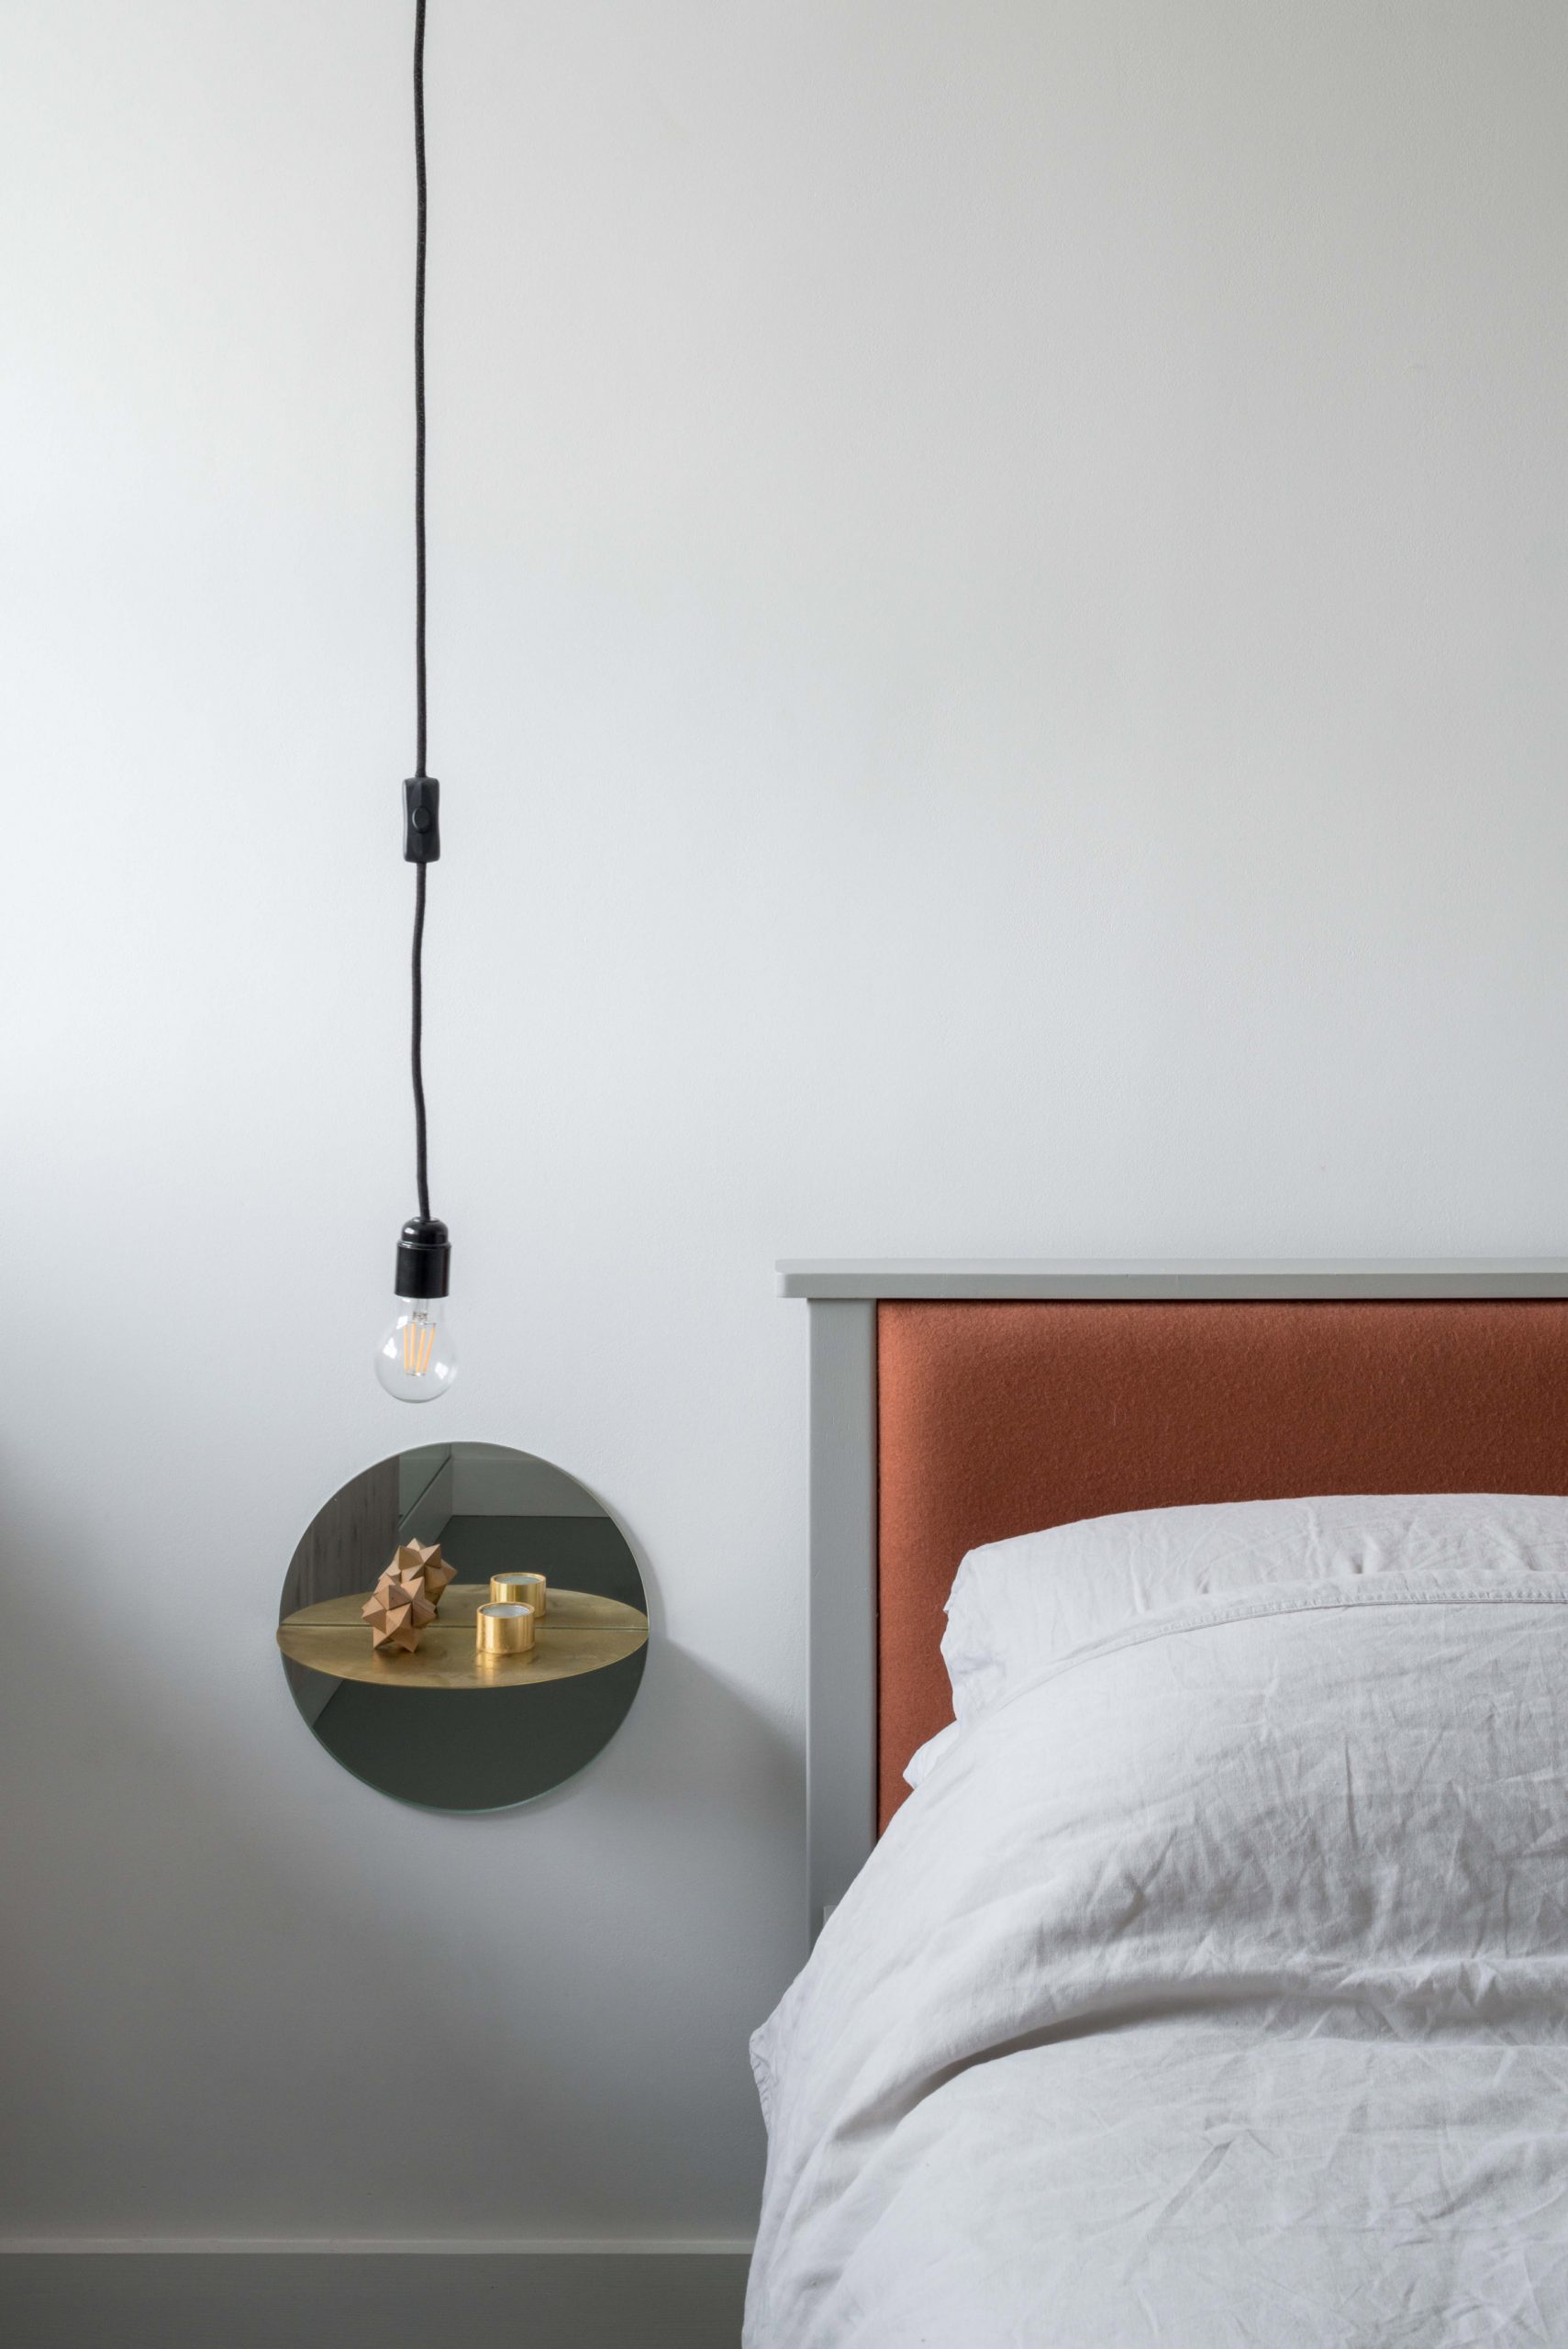 Thay vì sử dụng táp đầu giường nặng nề, thô cứng, chủ nhân căn hộ đã chọn sản phẩm của nghệ sĩ Olafur Eliasson với hình thức gắn tường cùng gương soi phản chiếu cho cái nhìn hiện đại và tinh giản.